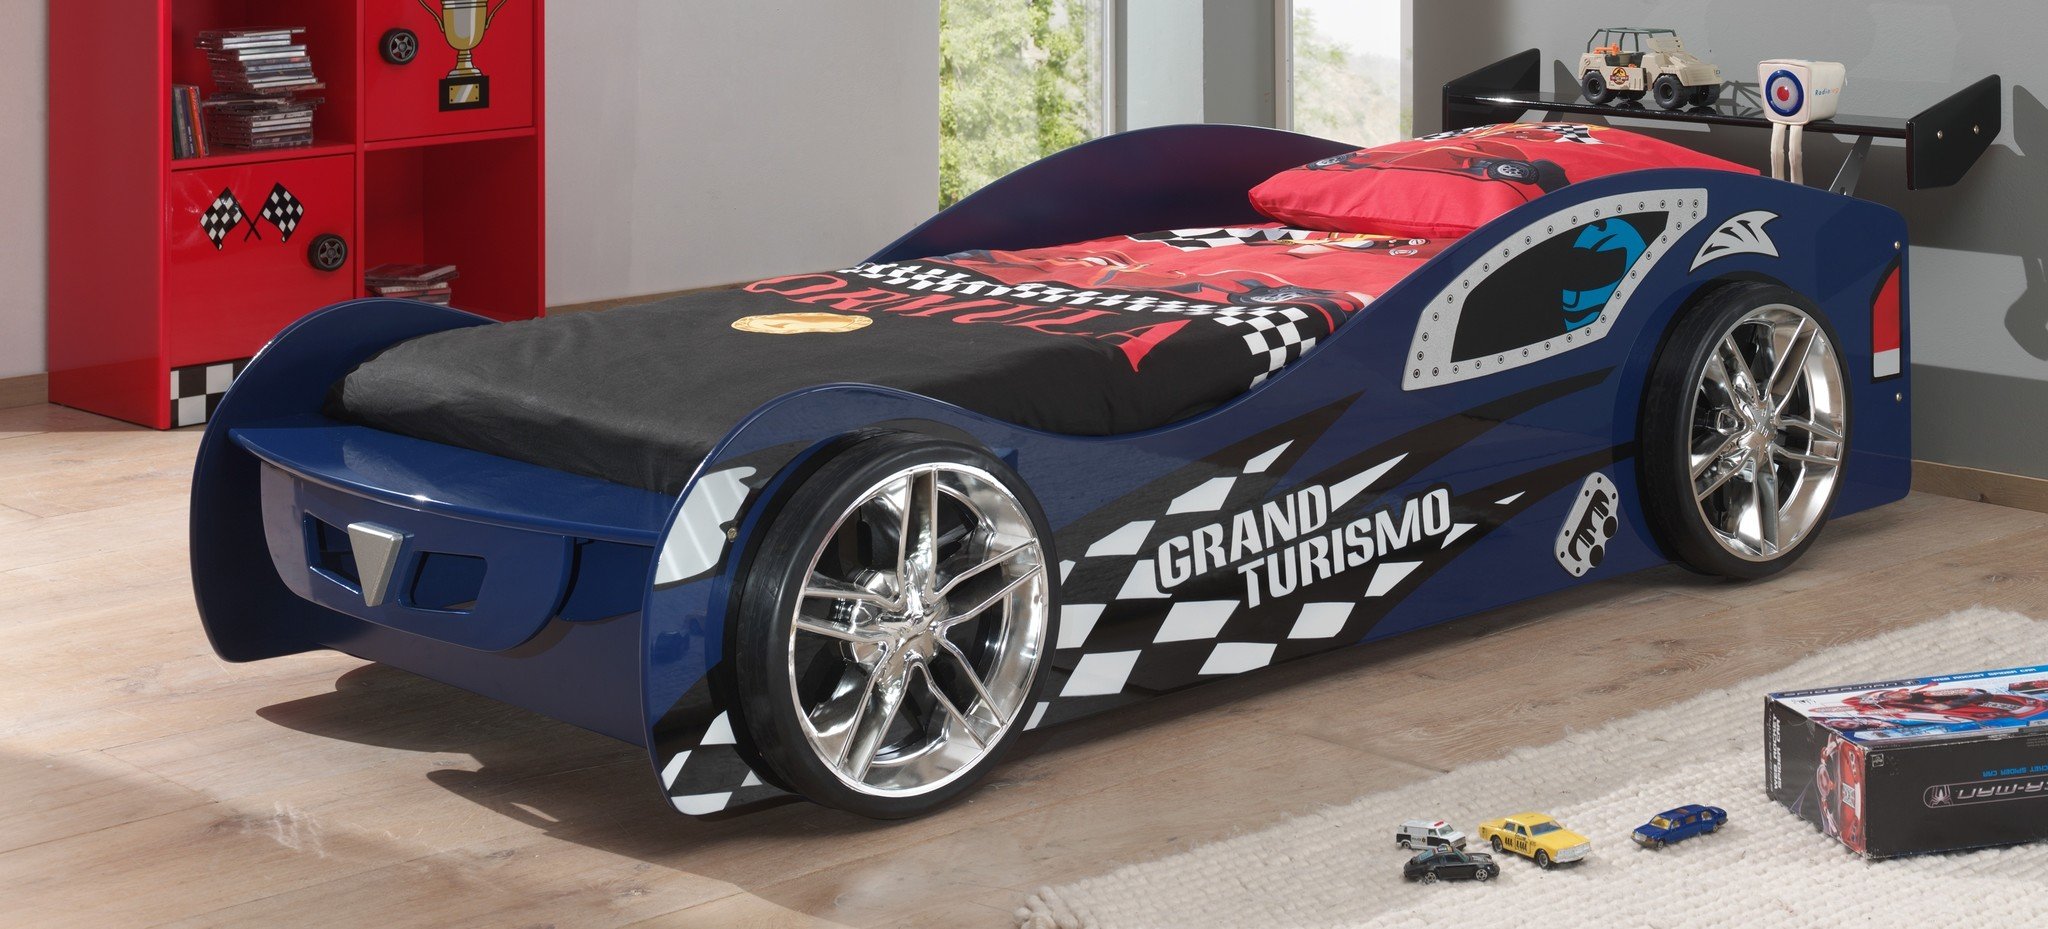 Autobed Grand Turismo - 90x200 - prijs garantie! -